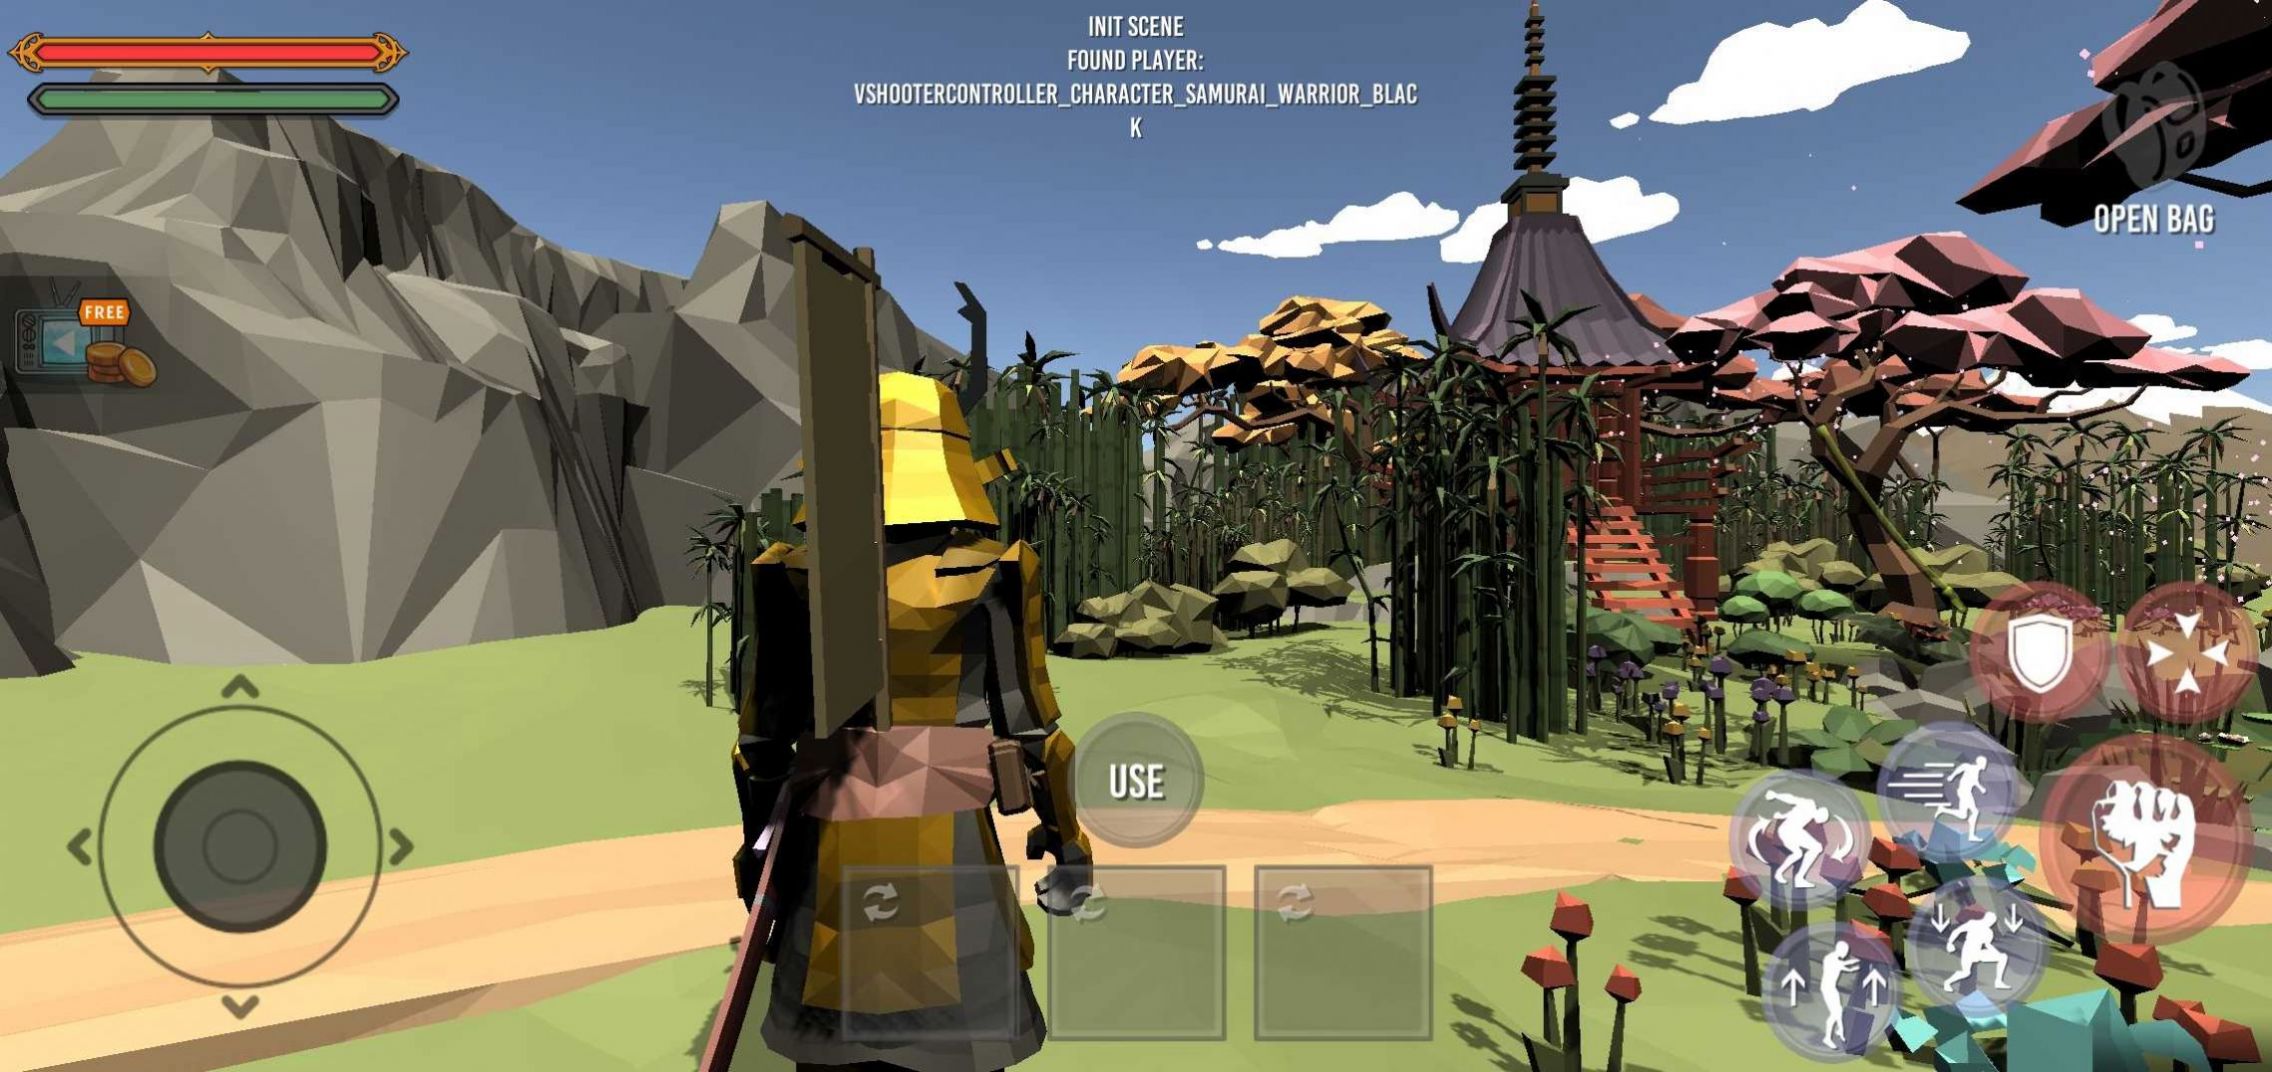 武士生存沙盒模拟器游戏下载手机版图片1